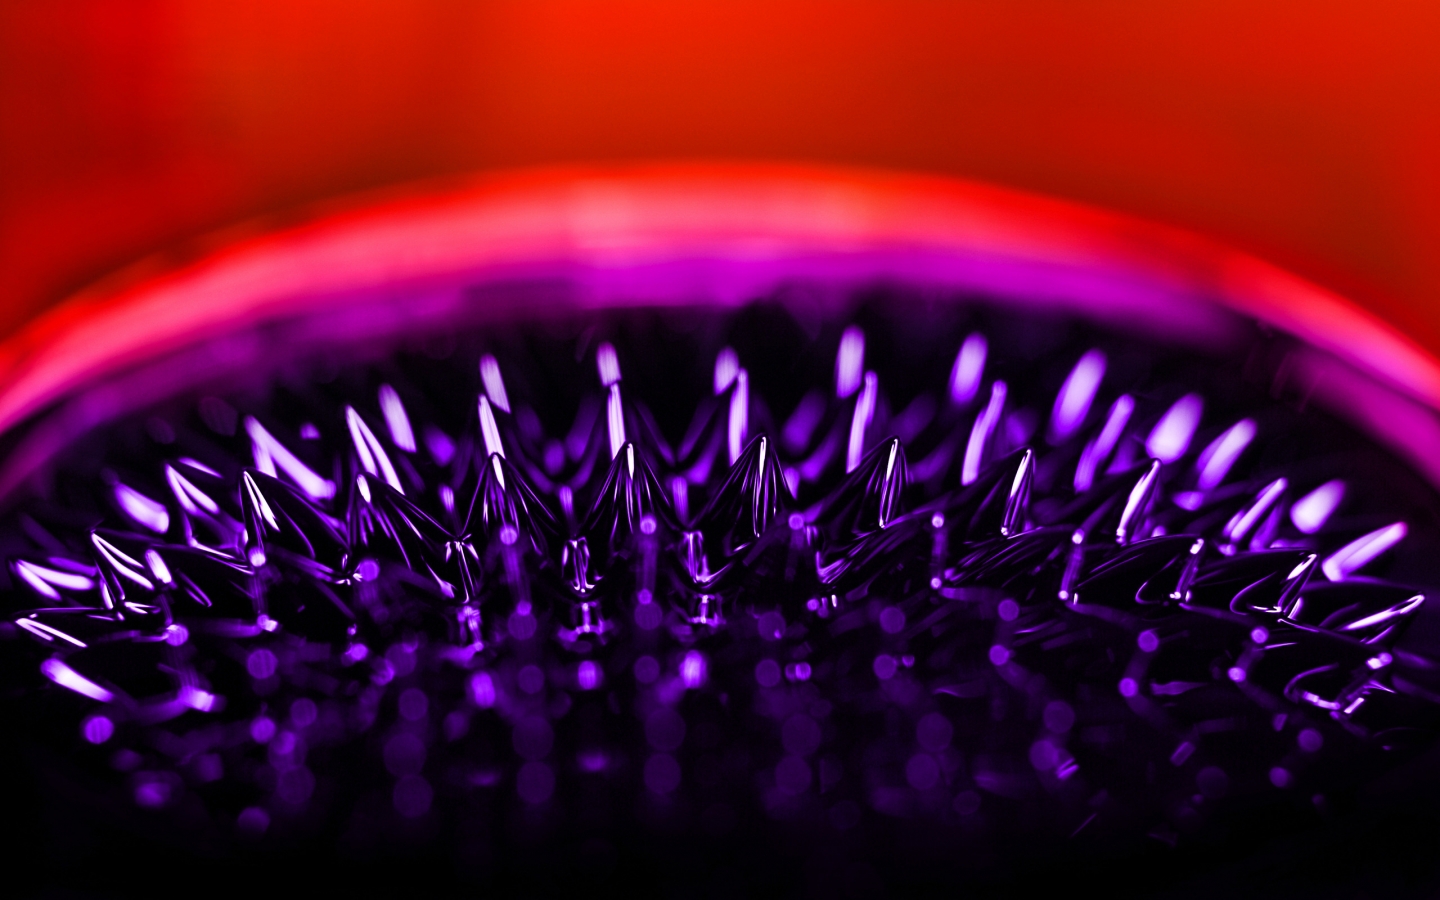 Ferrofluid for 1440 x 900 widescreen resolution